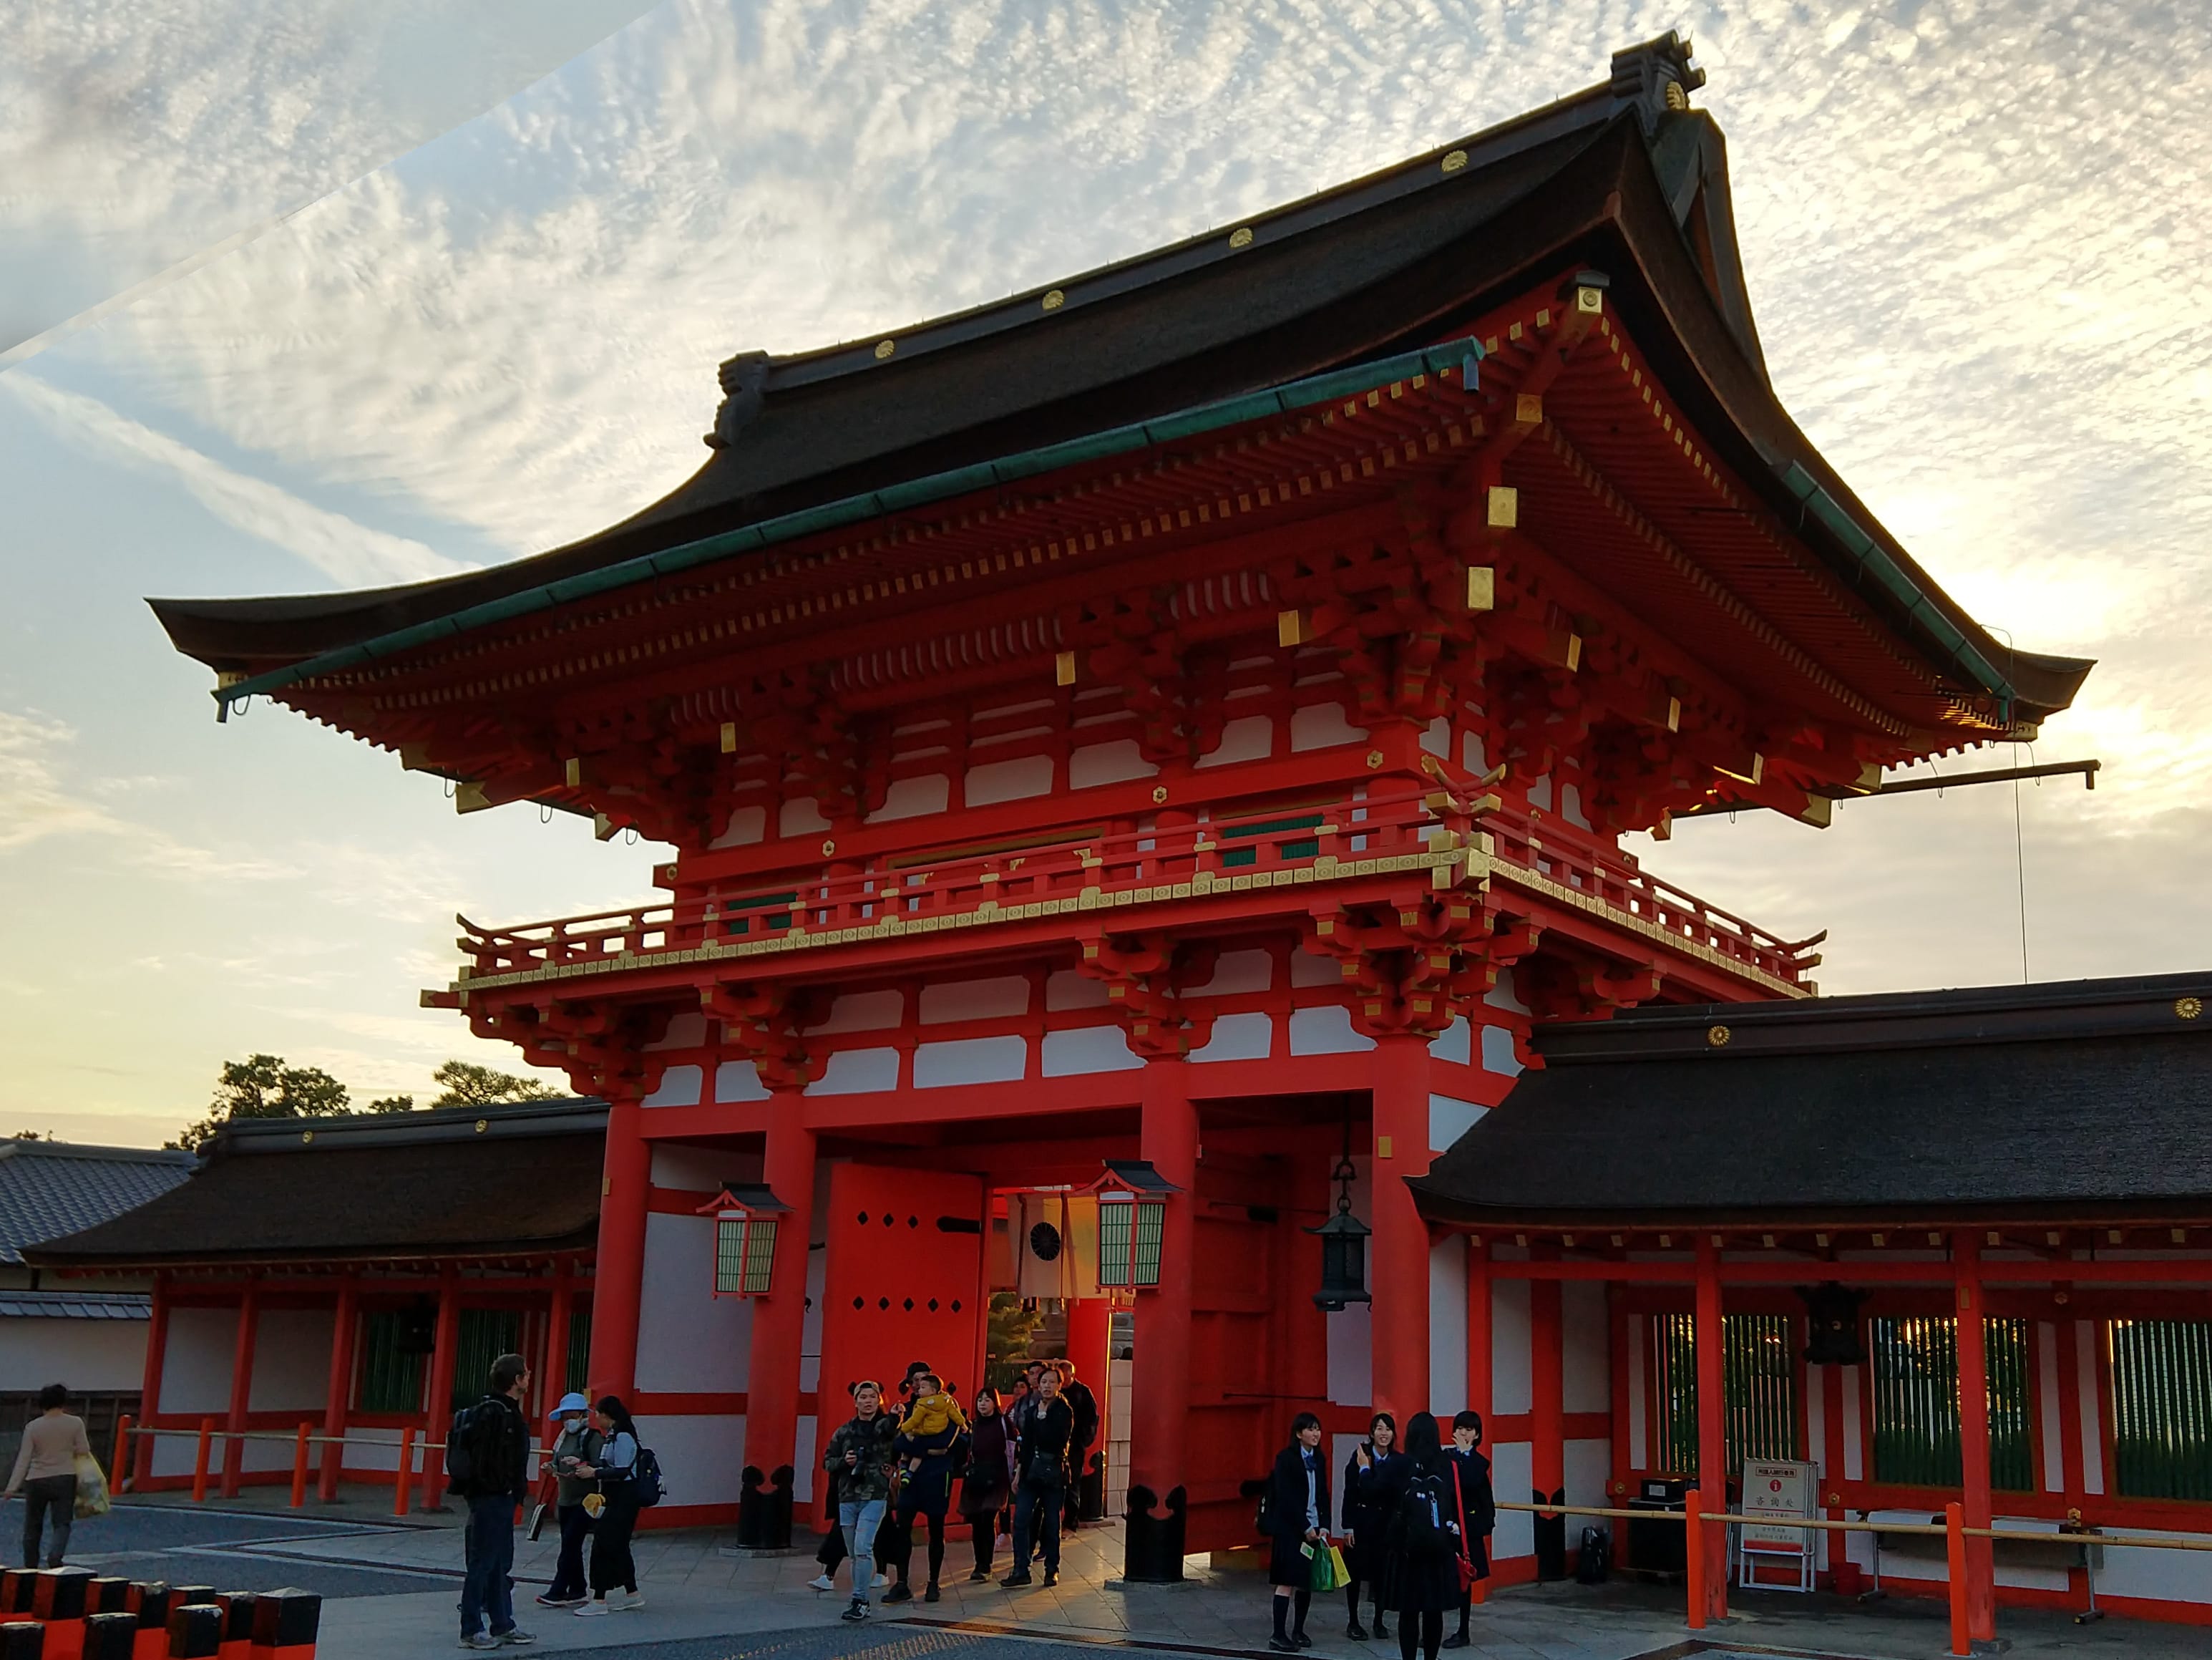 The entrance to Fushimi Inari Shrine in Kyoto, Japan